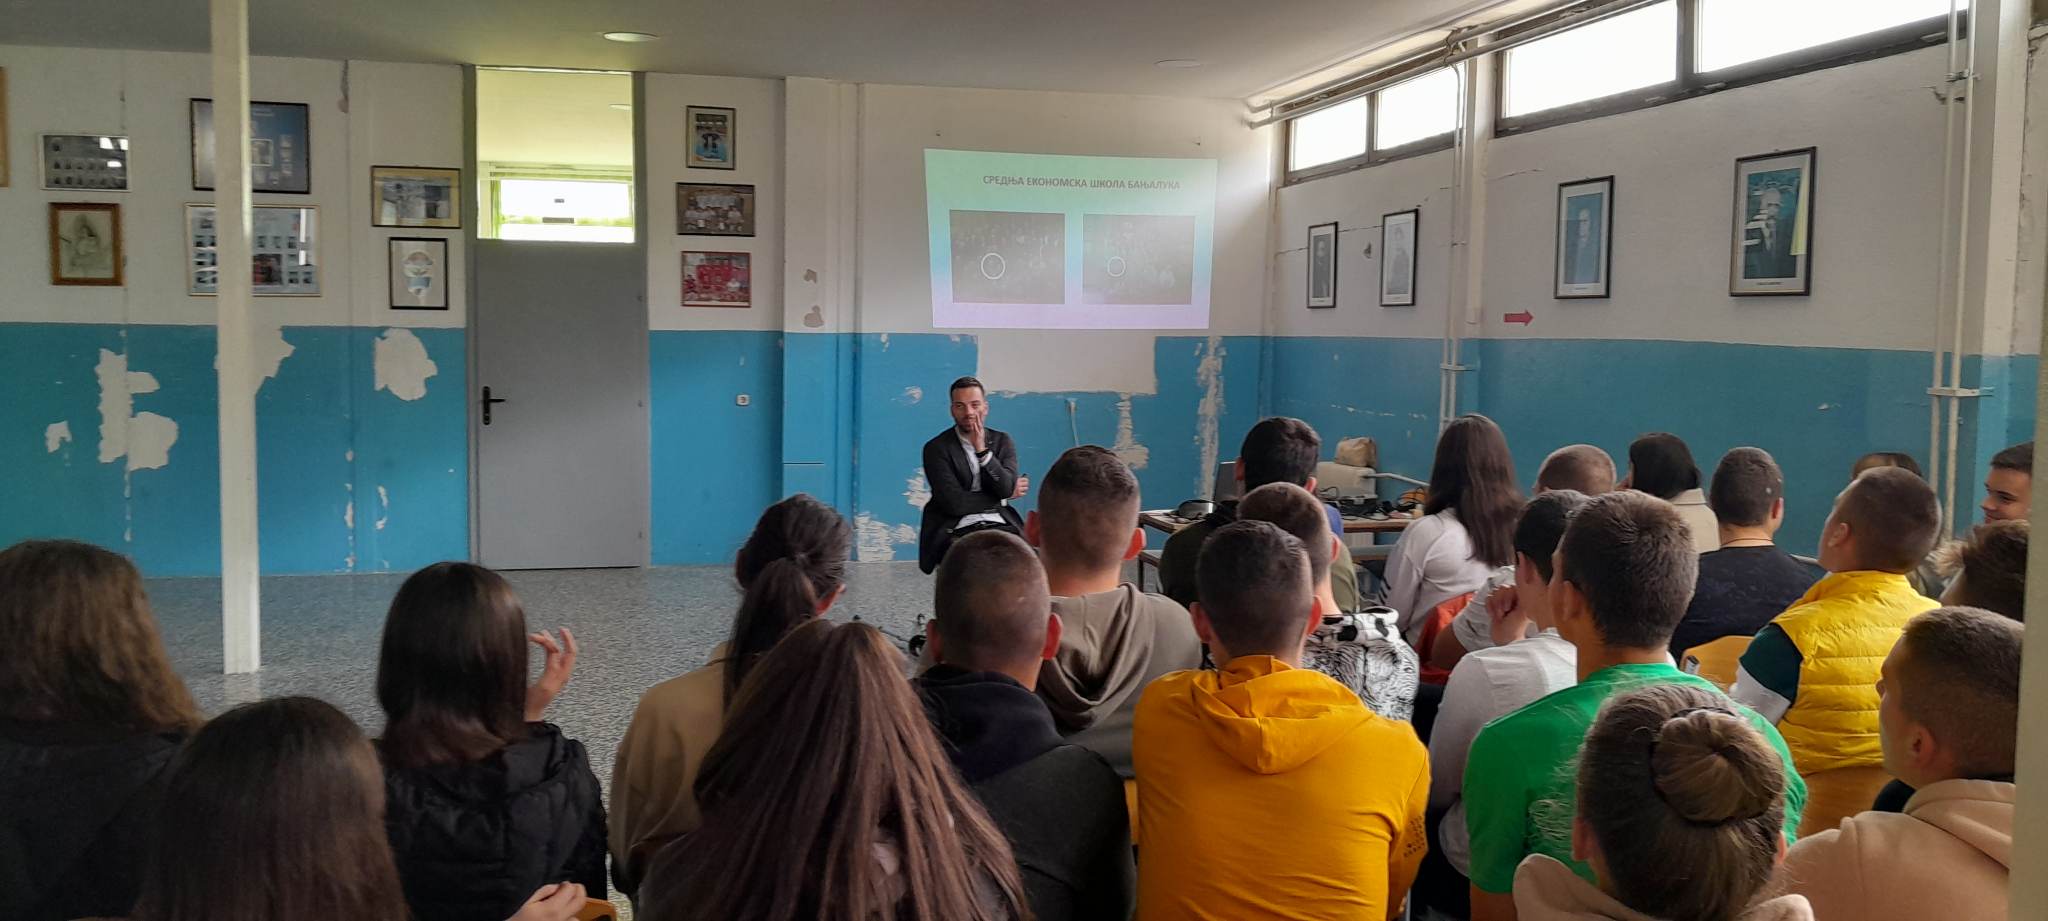  Предавање на тему „Безбједност младих у саобраћају“ одржано у ЈУ СШЦ „Светозар Ћоровић“ у Љубињу